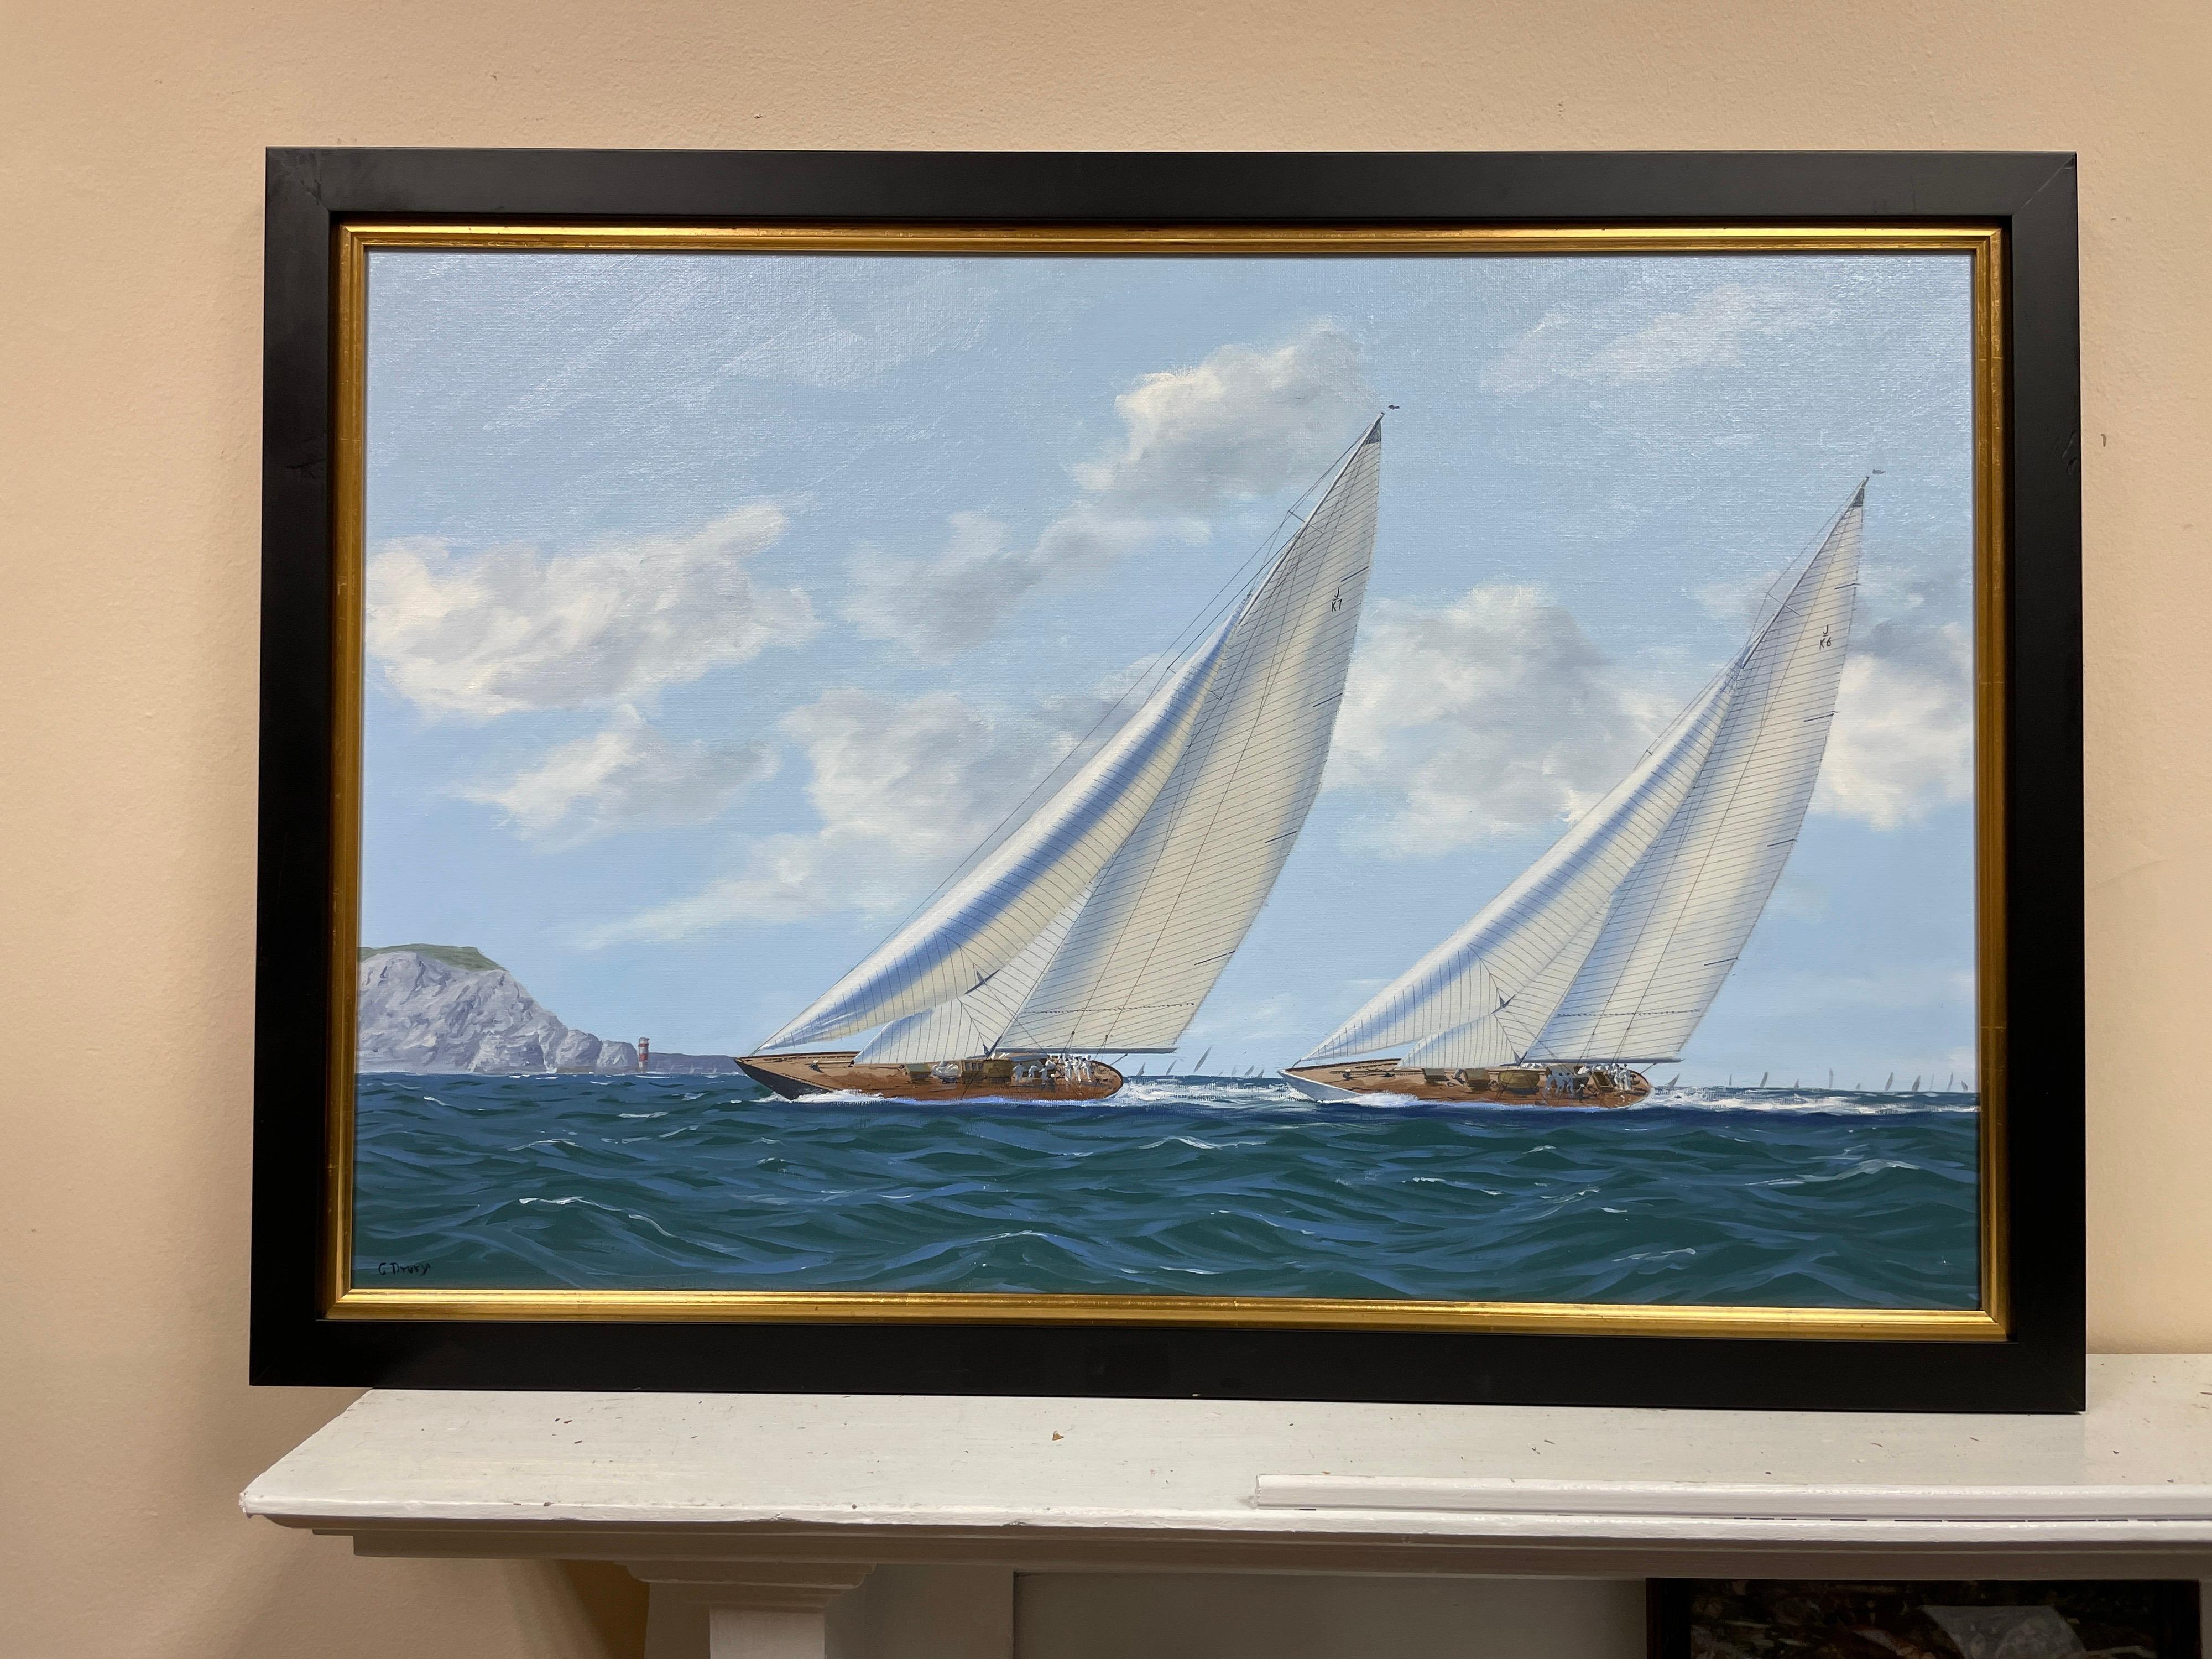 Voiliers de course classiques au large des aiguilles, belle peinture à l'huile signée de la marine britannique - Réalisme Painting par George Drury